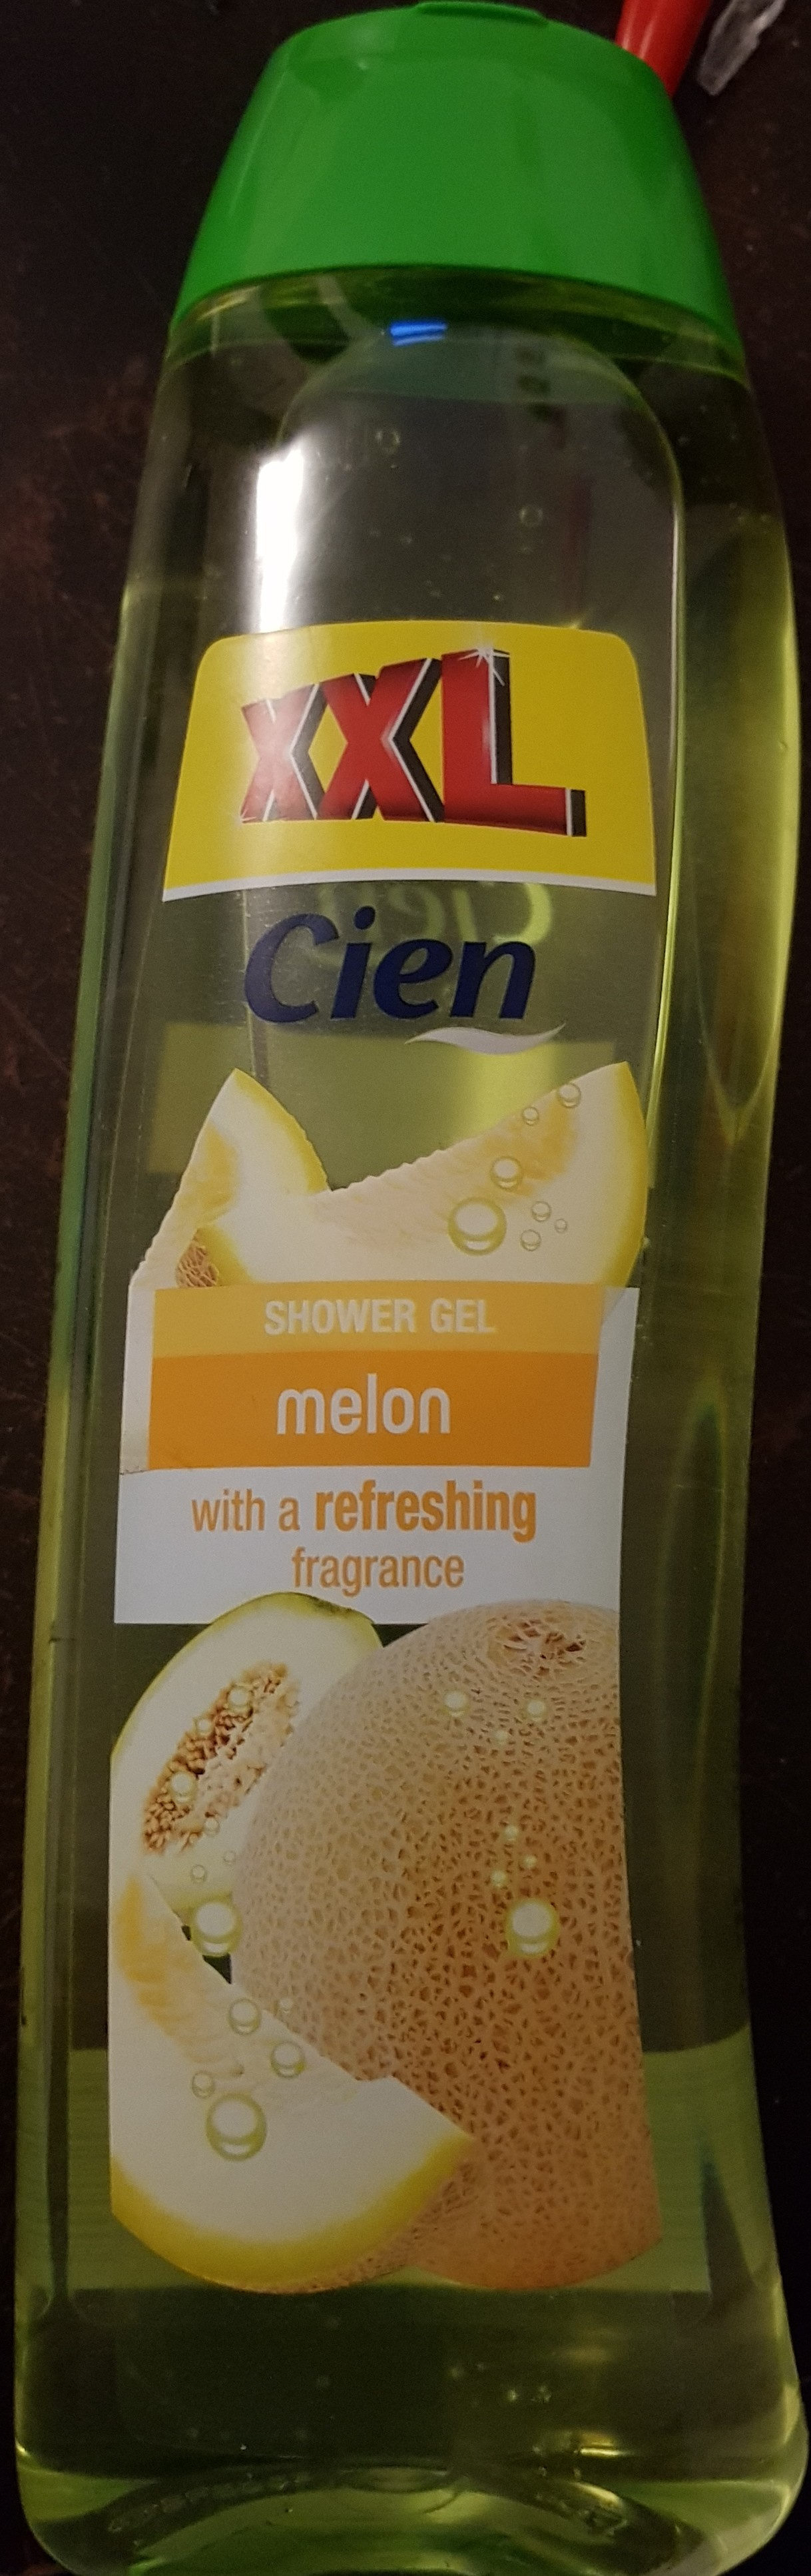 Shower gel melon - Product - fr